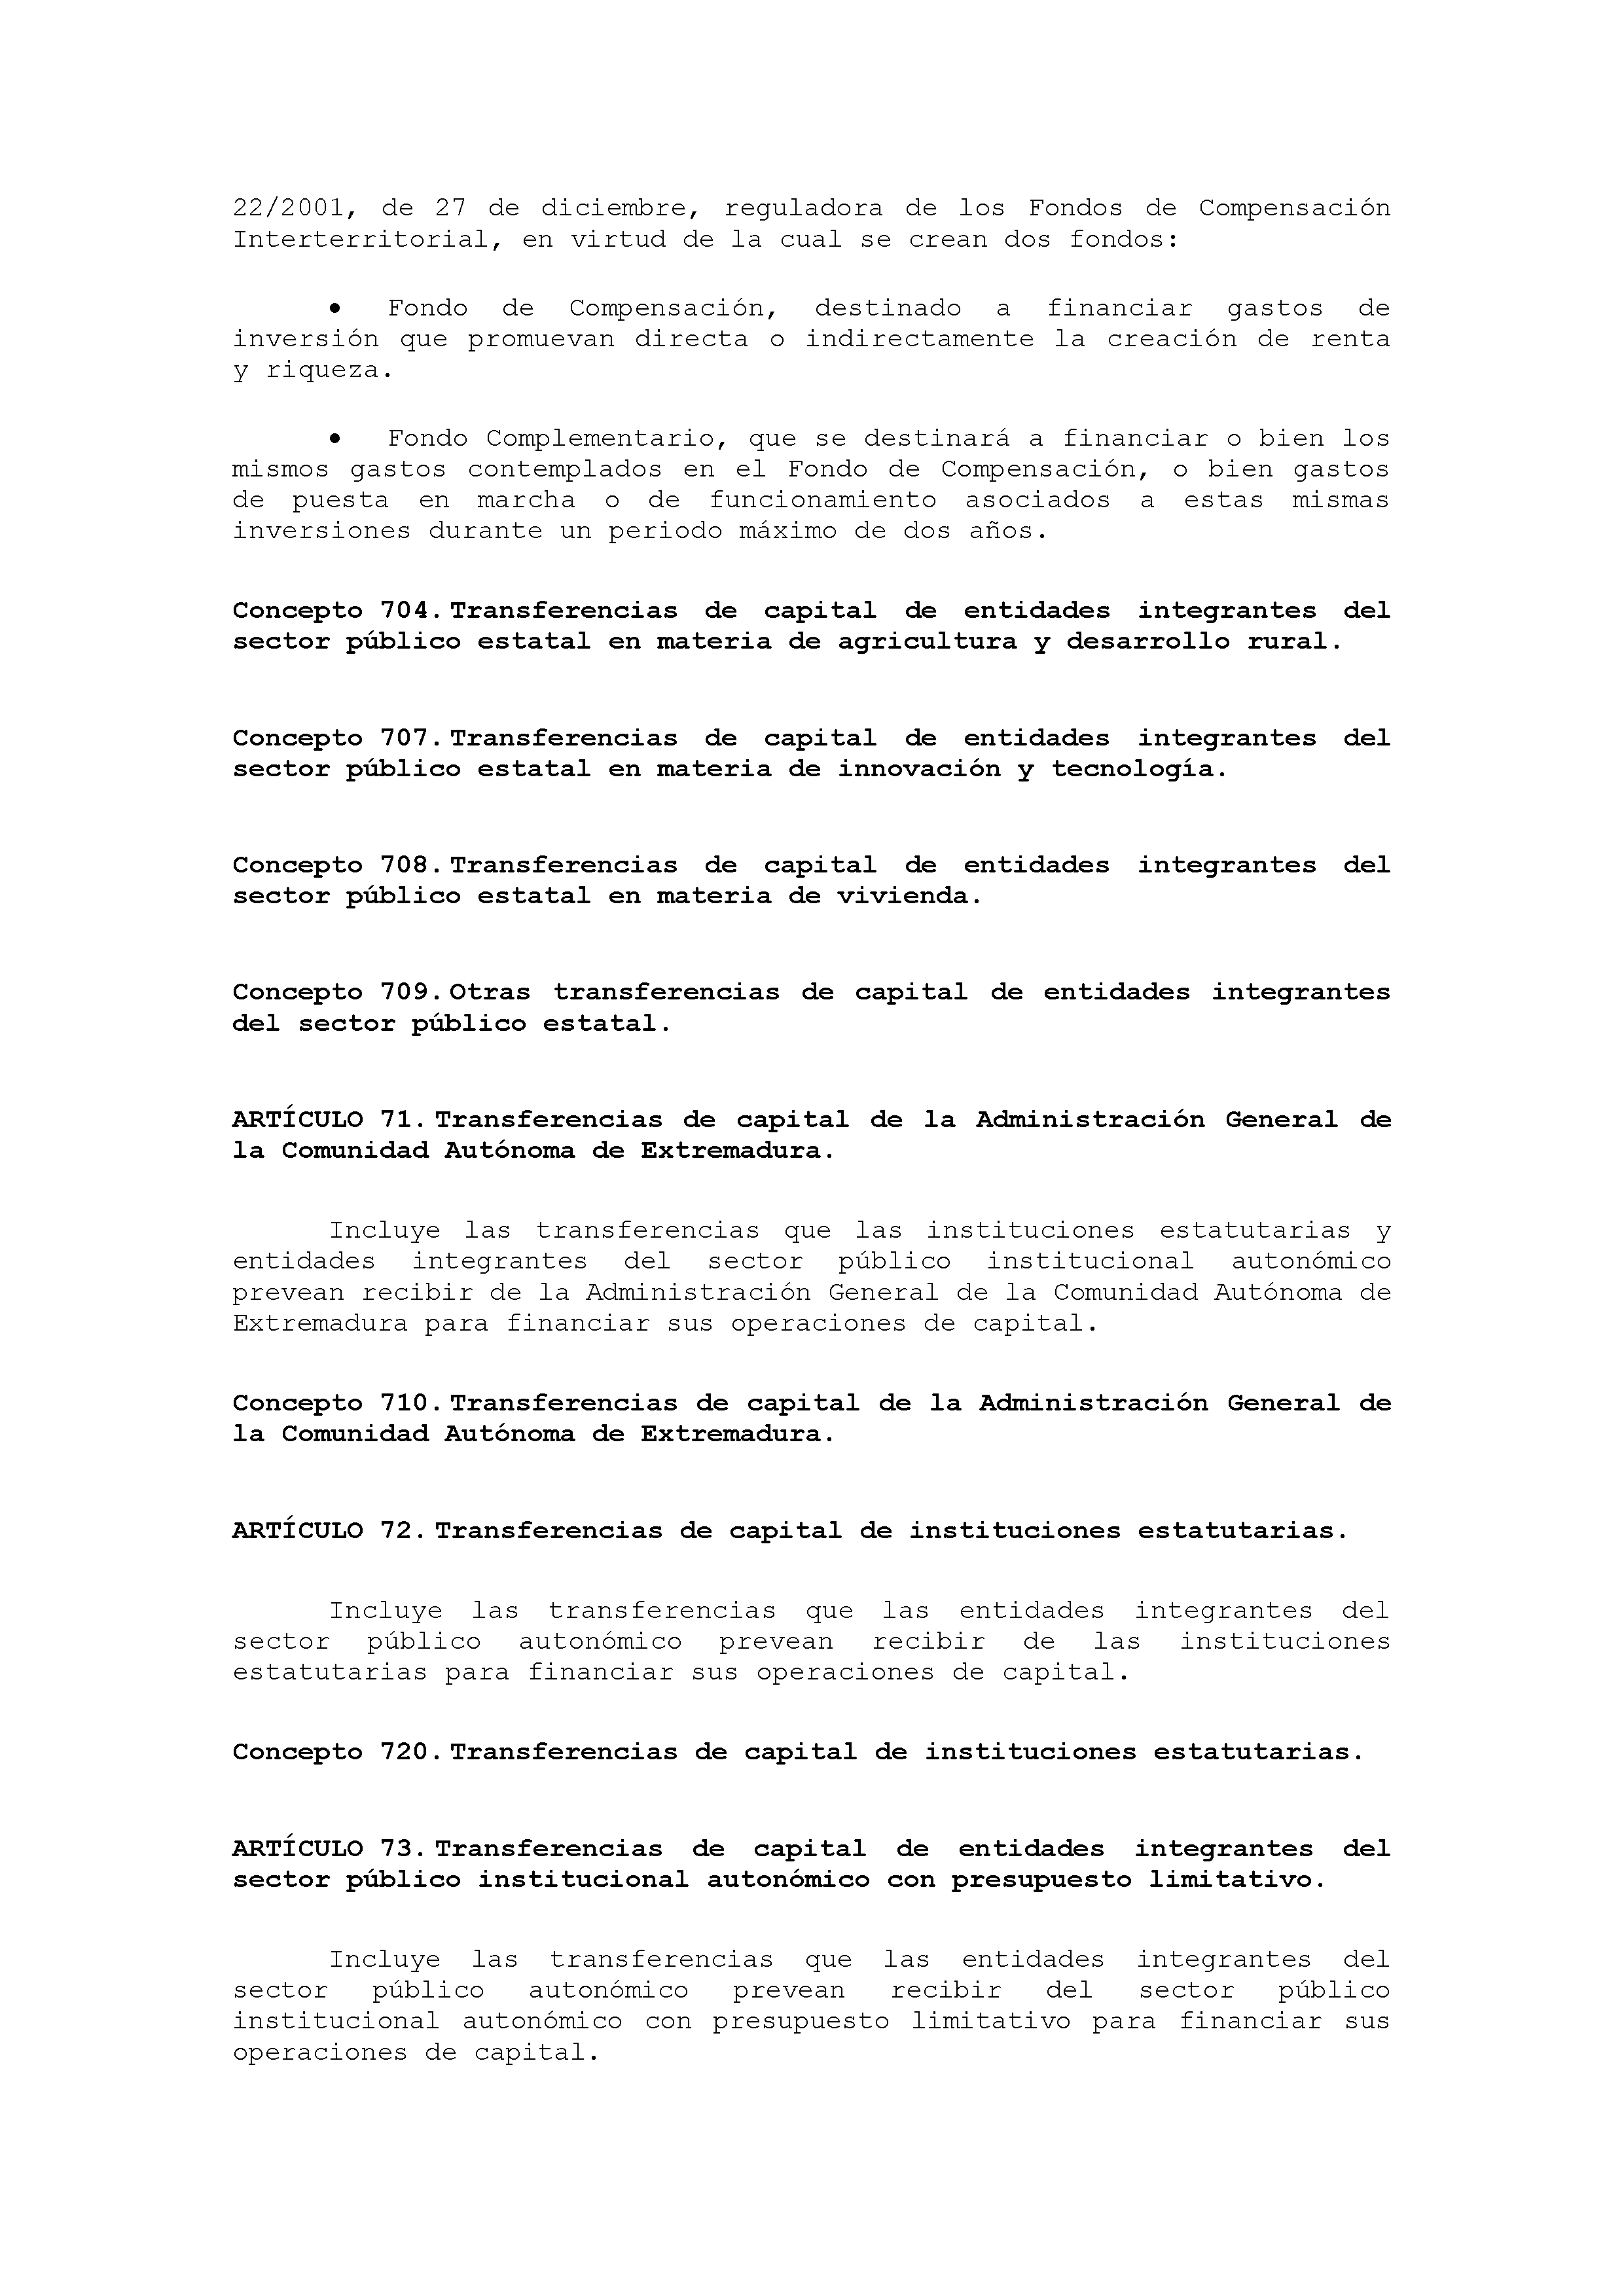 ANEXO VIII CÓDIGO DE LA CLASIFICACIÓN ECONÓMICA DE LOS INGRESOS PÚBLICOS Pag 20